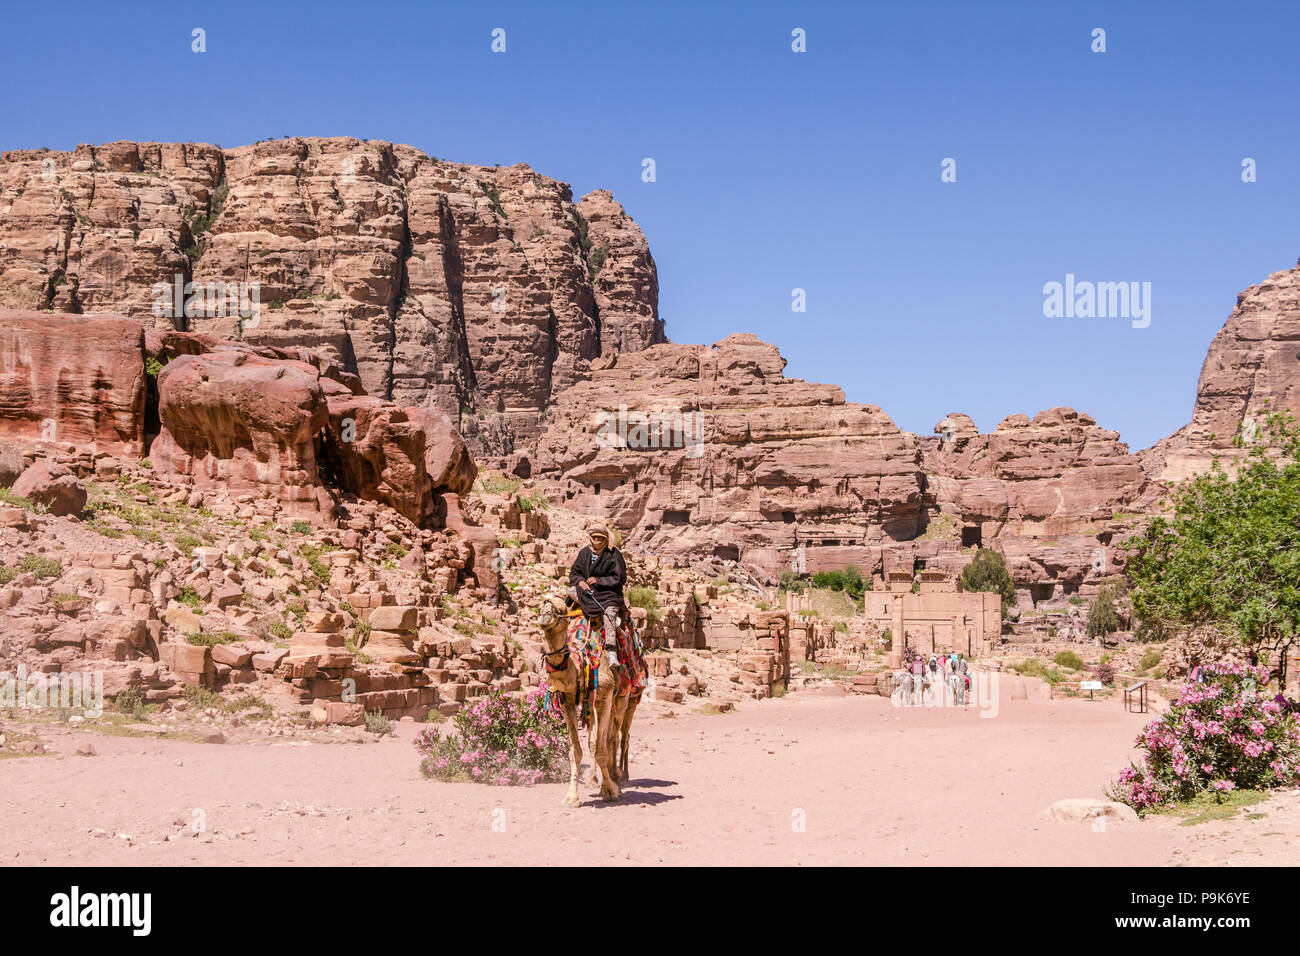 PETRA, JORDANIE - 30 avril 2016 : Un bedouinman à cheval sur un chameau je Banque D'Images